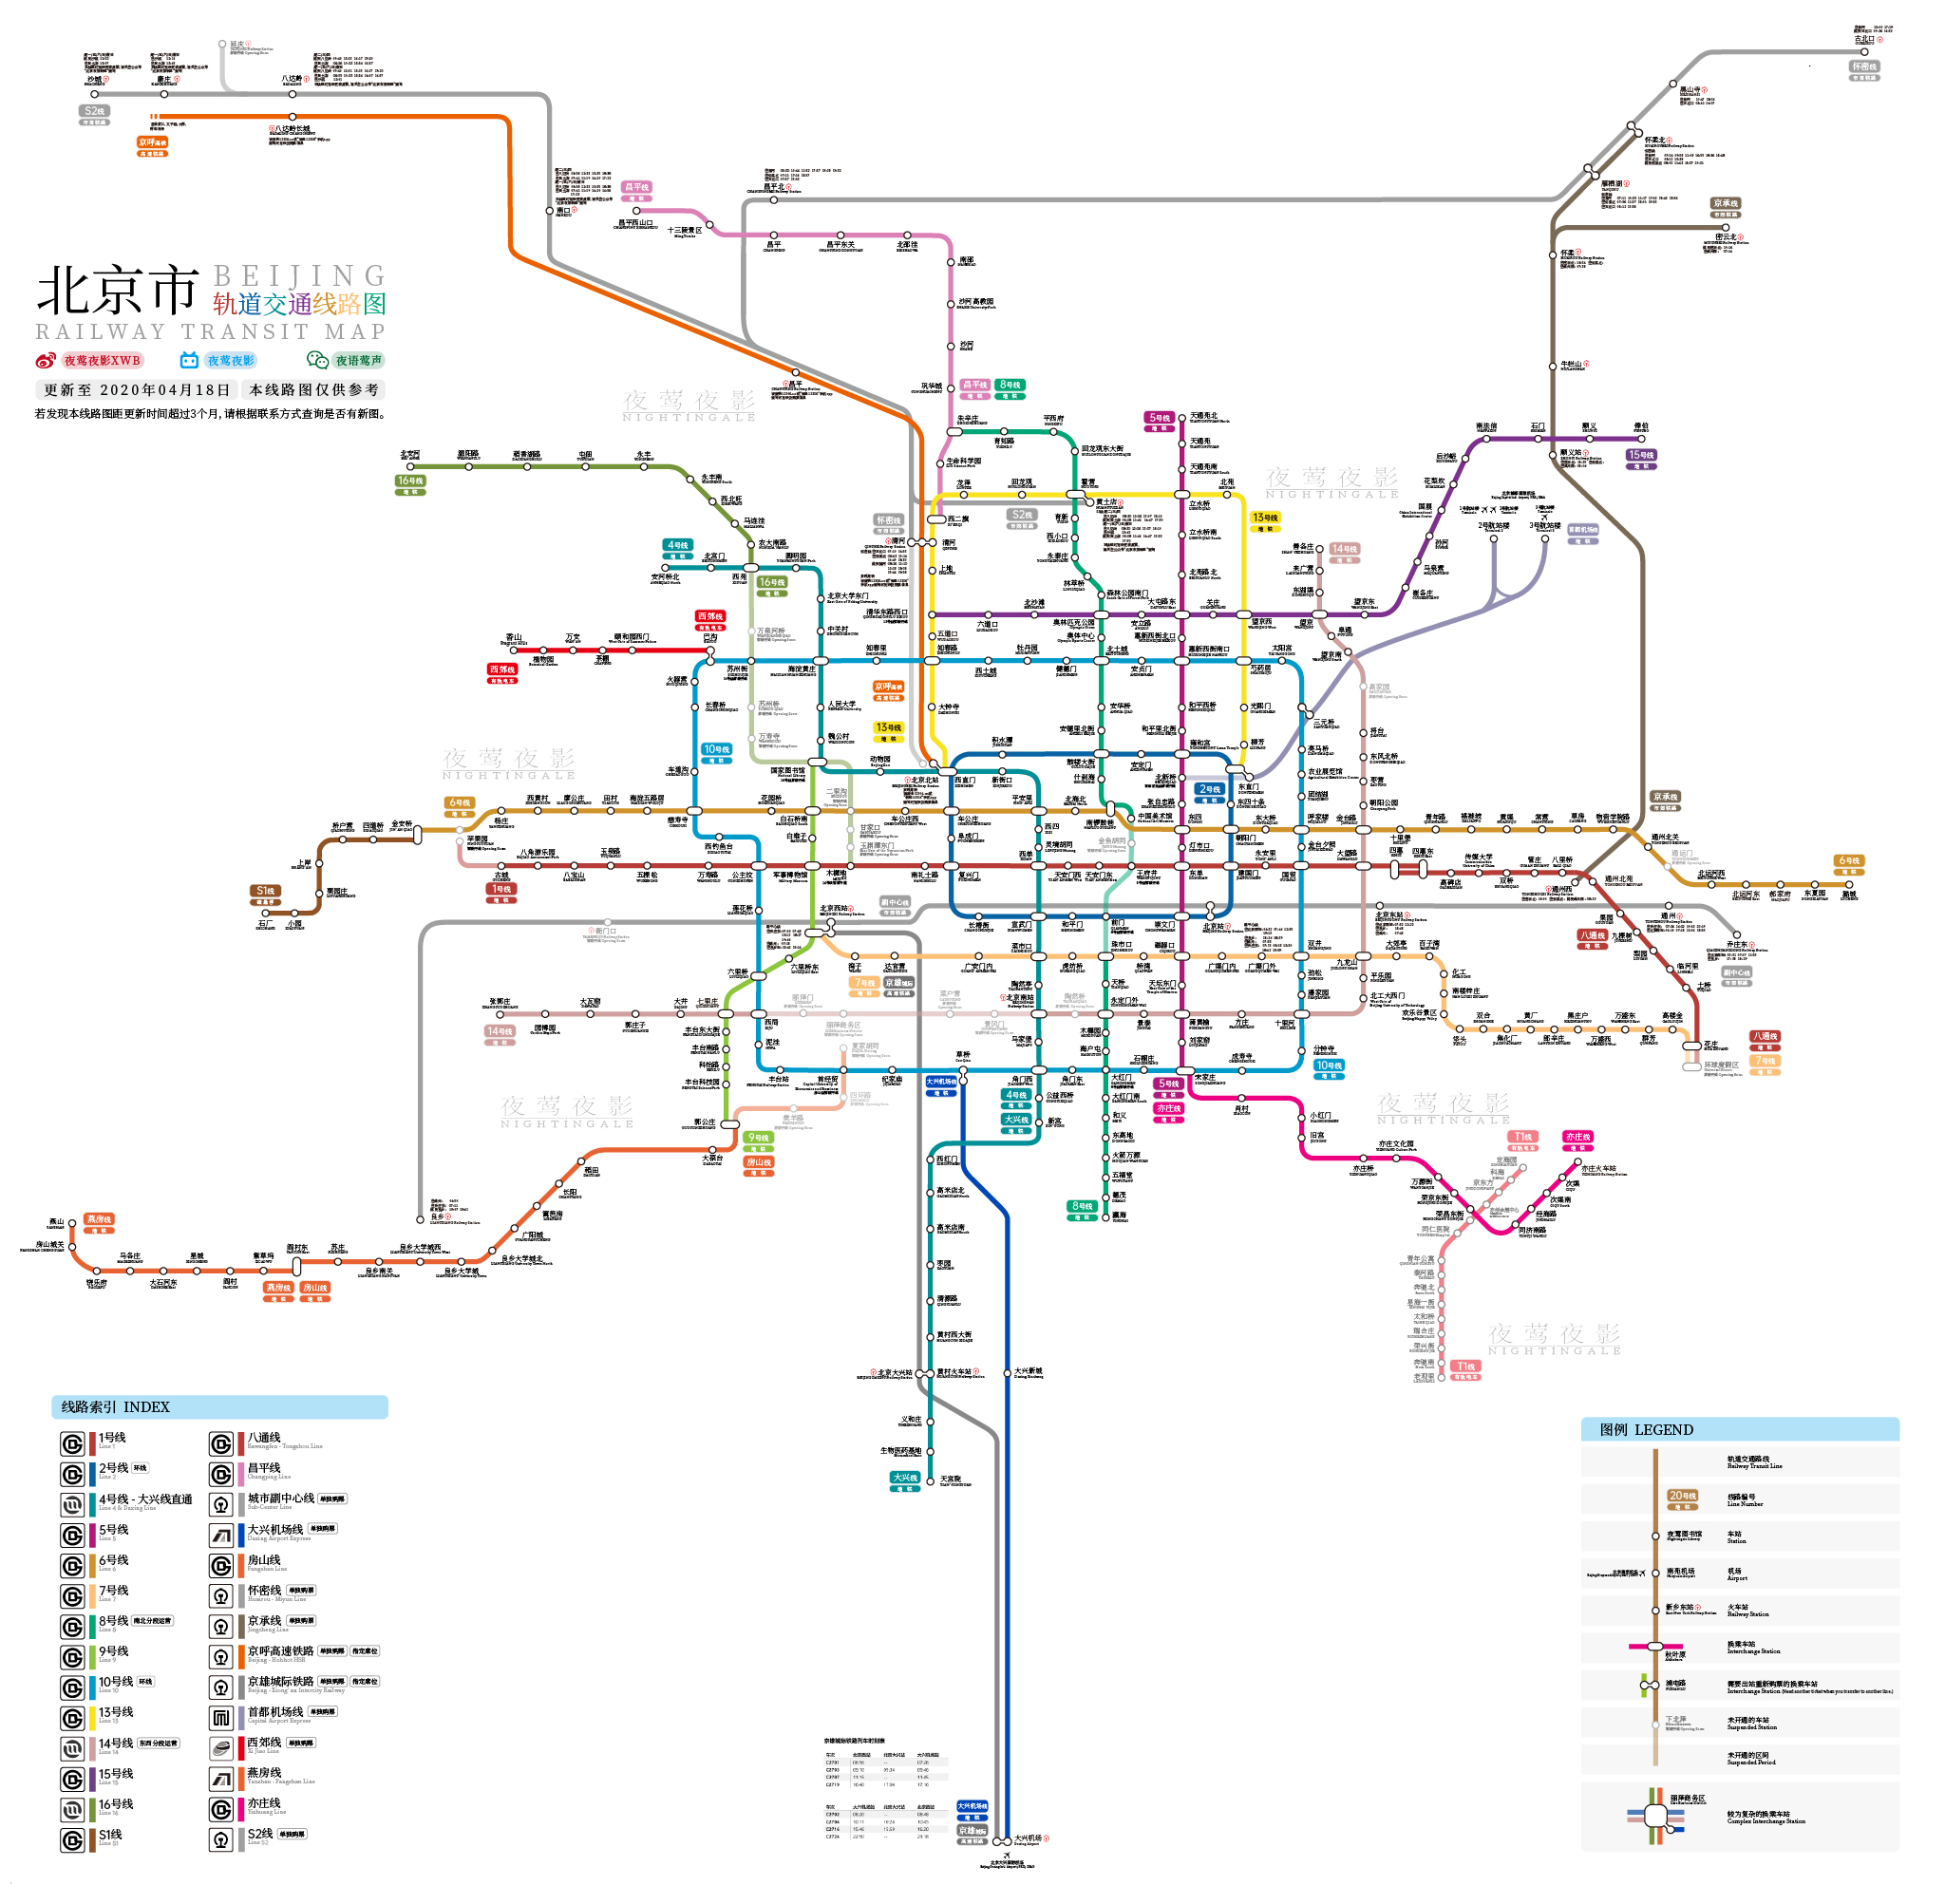 夜莺出品 | 北京市轨道交通线路图(更新至2020年06月30日)